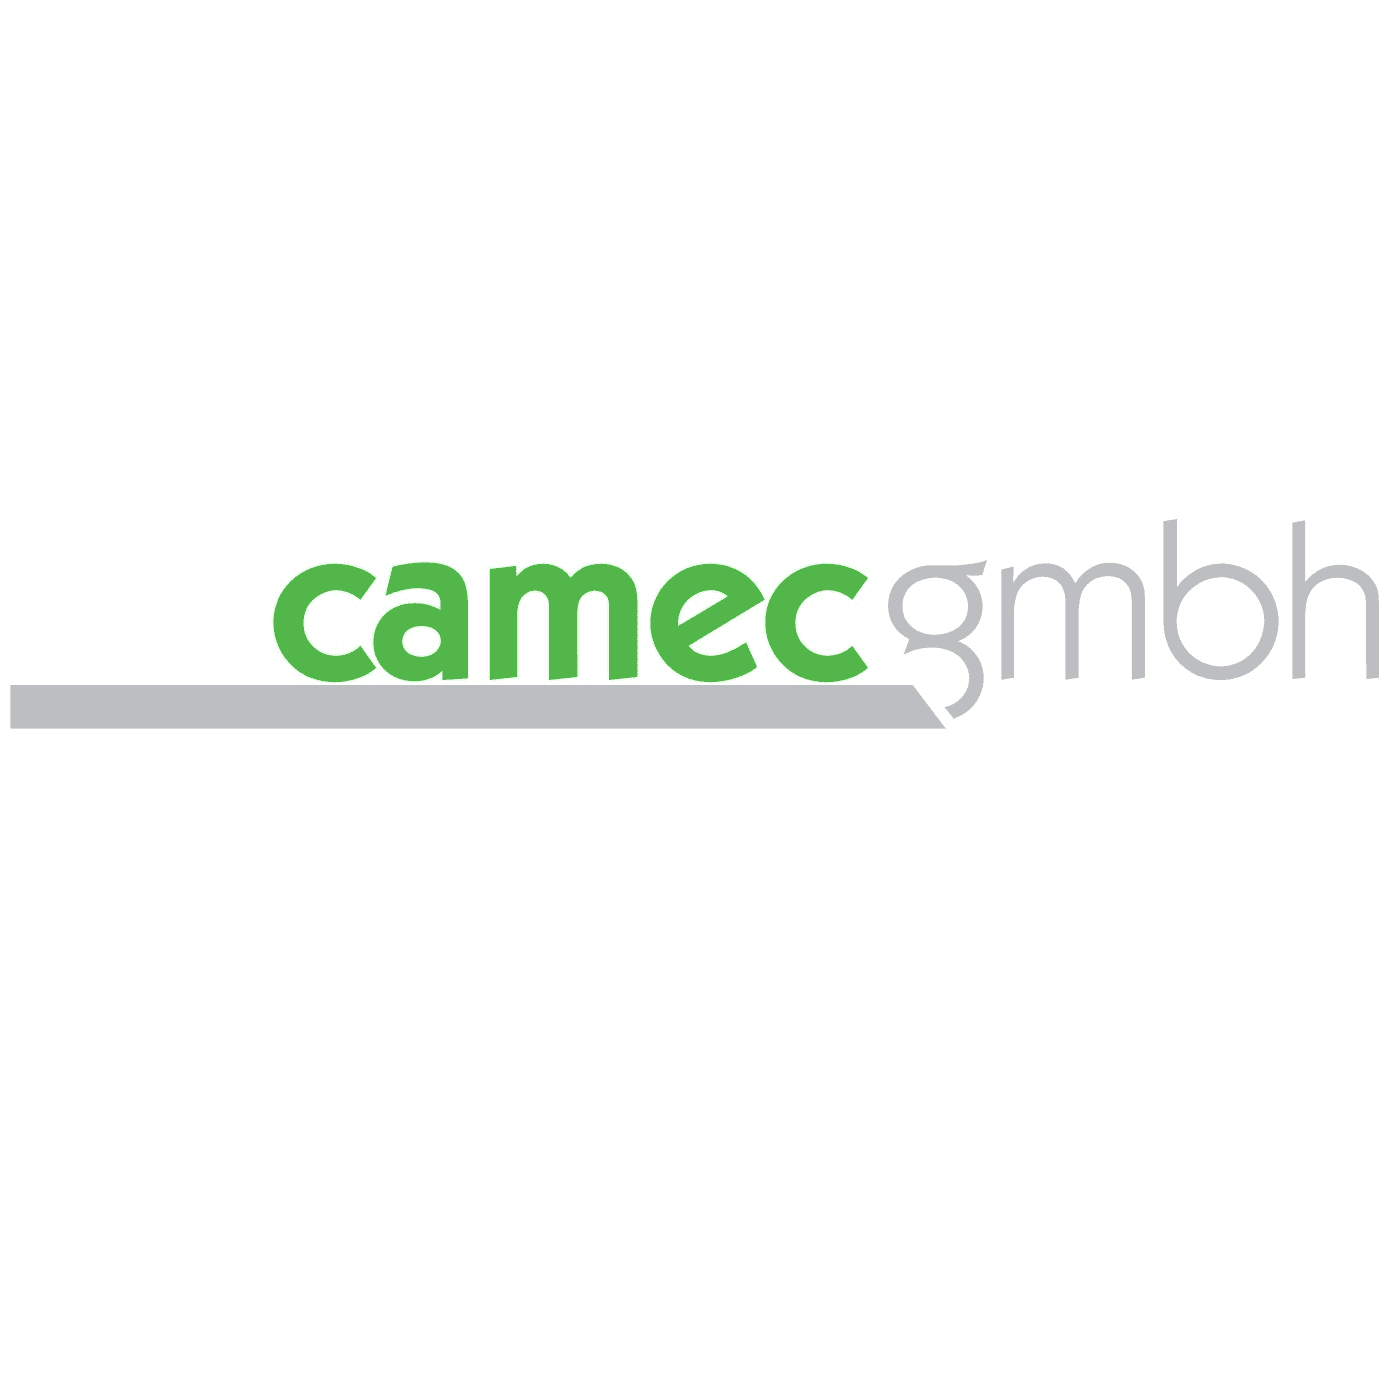 Camec GmbH